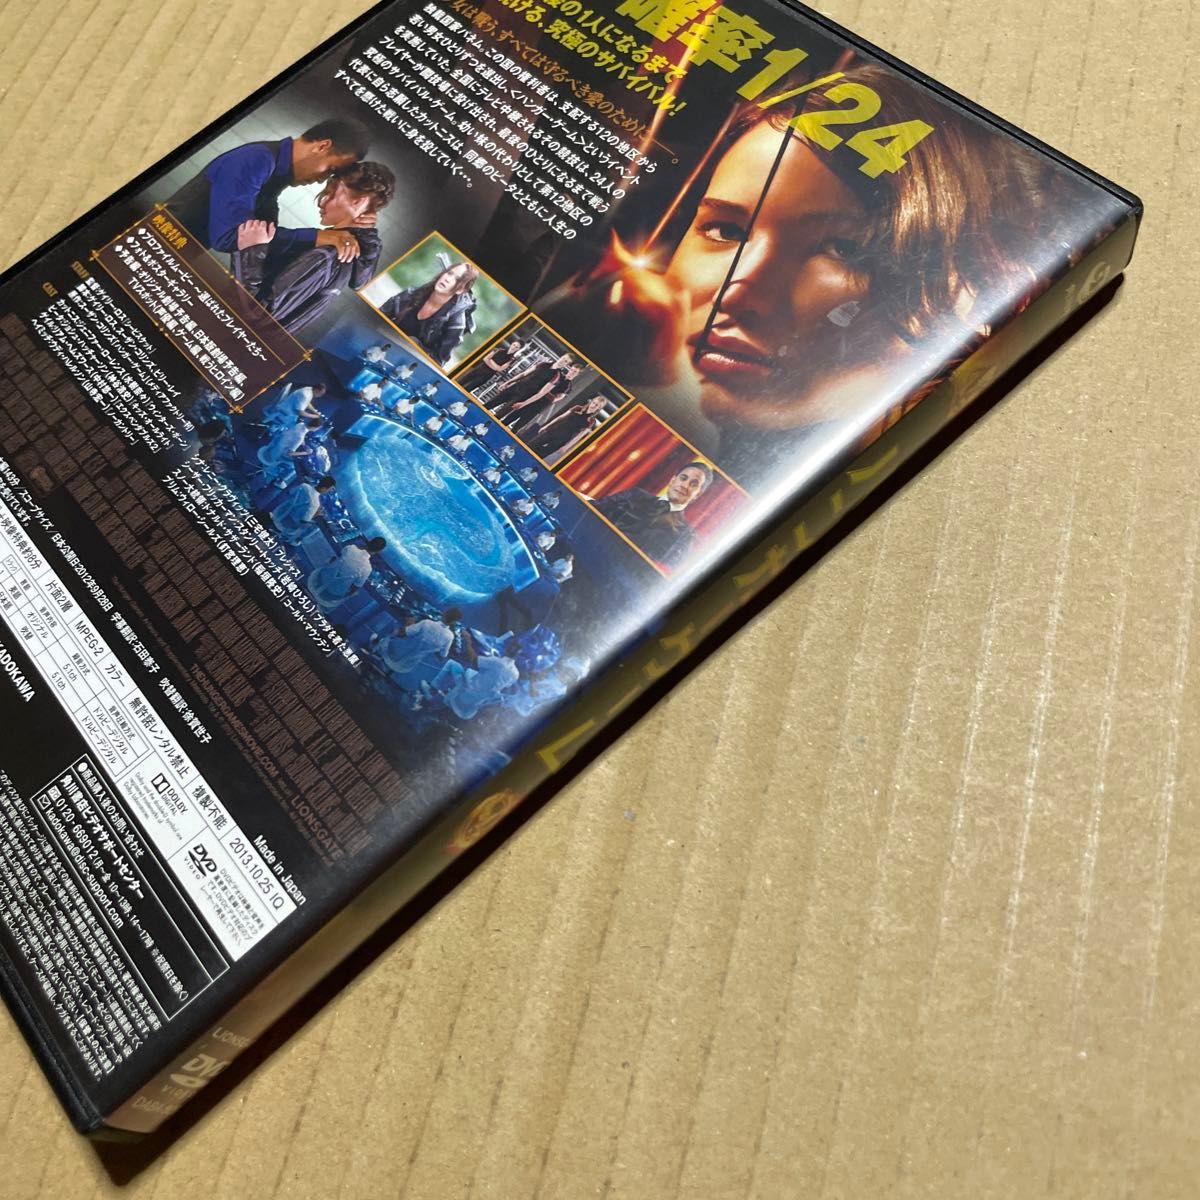 ハンガーゲーム 【DVD】ジェニファーローレンス